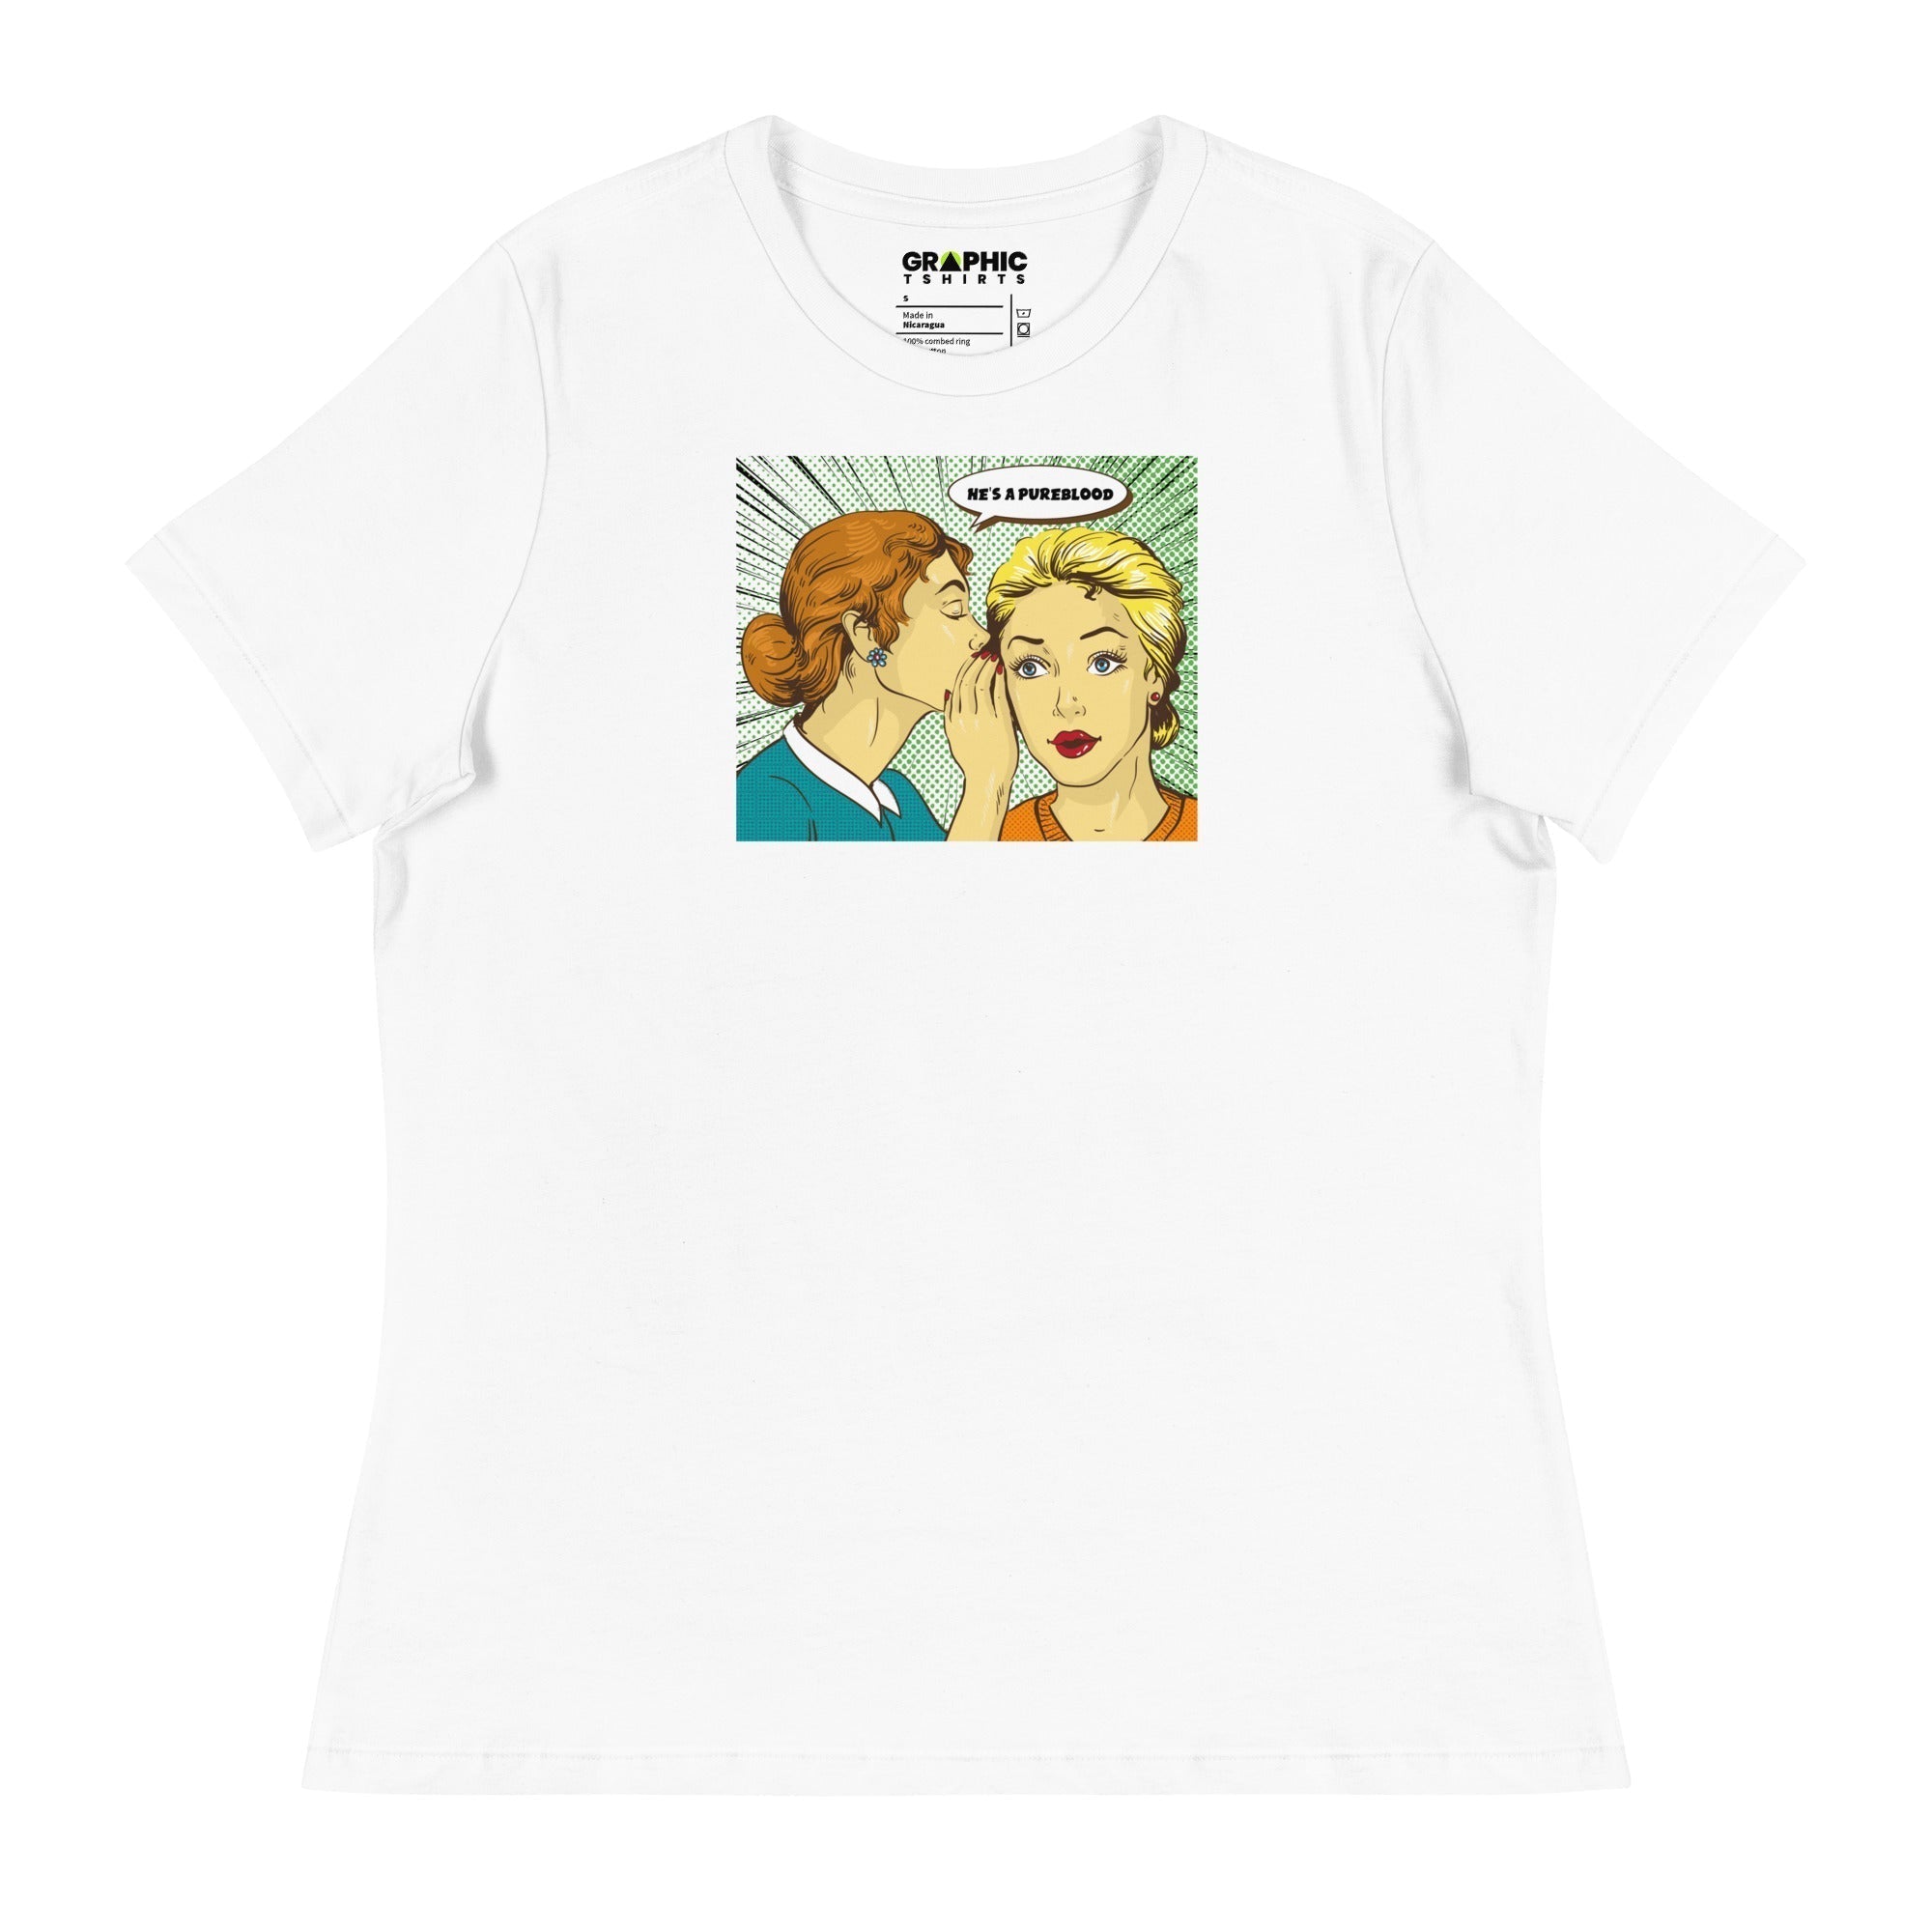 Women's Relaxed T-Shirt - He's A Pureblood Pop Art - GRAPHIC T-SHIRTS